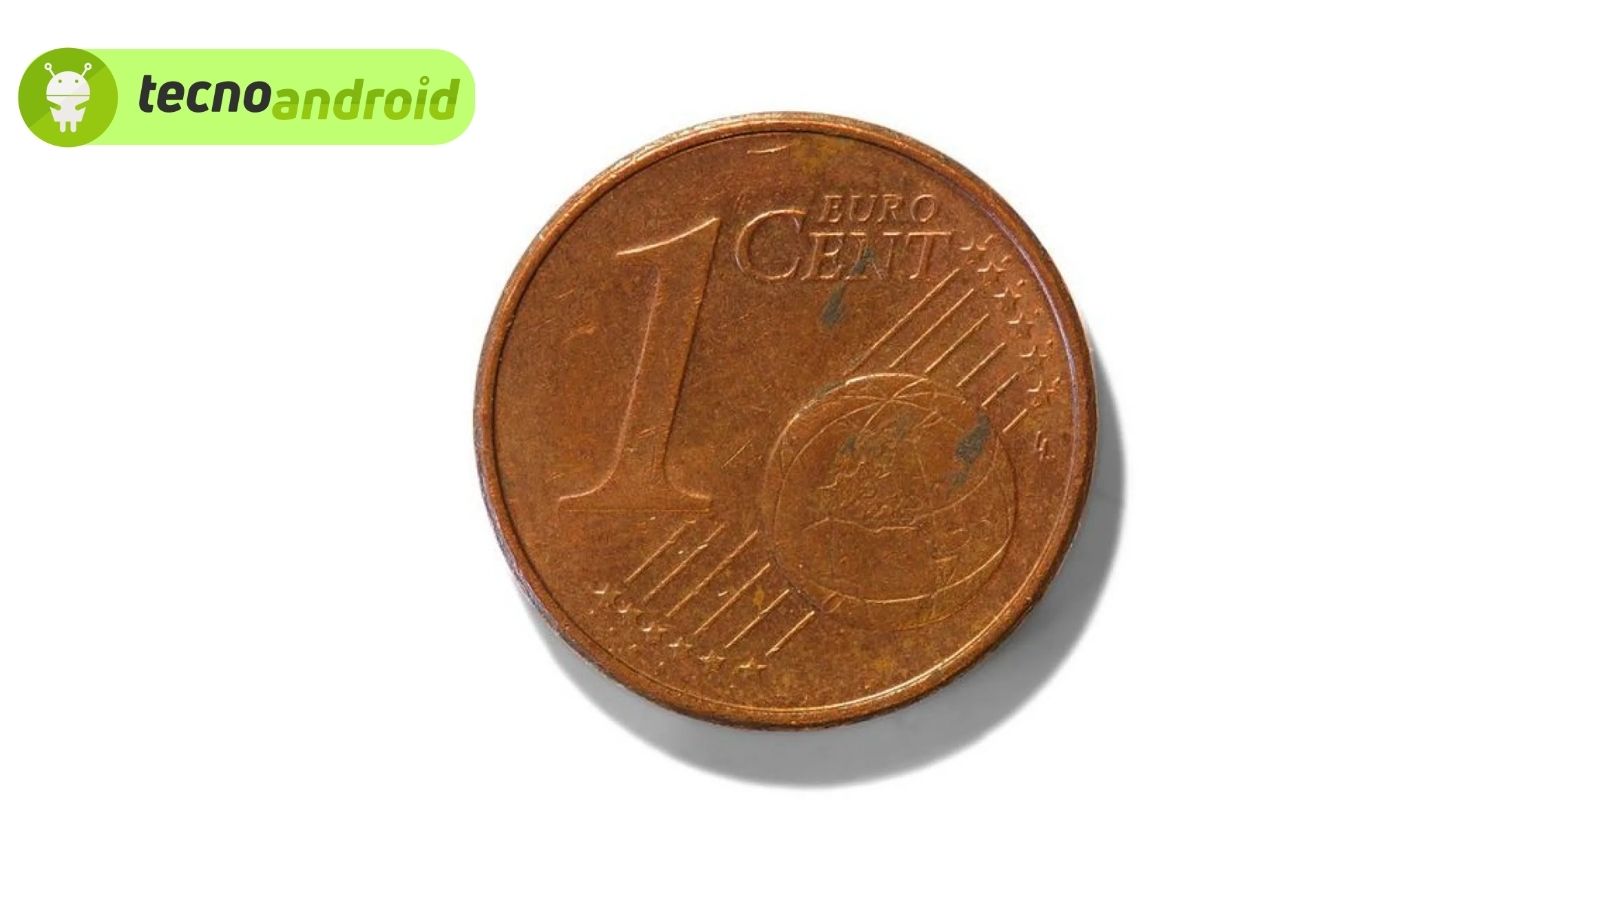 Monete rare: scopriamo le monete da 1 centesimo più preziose